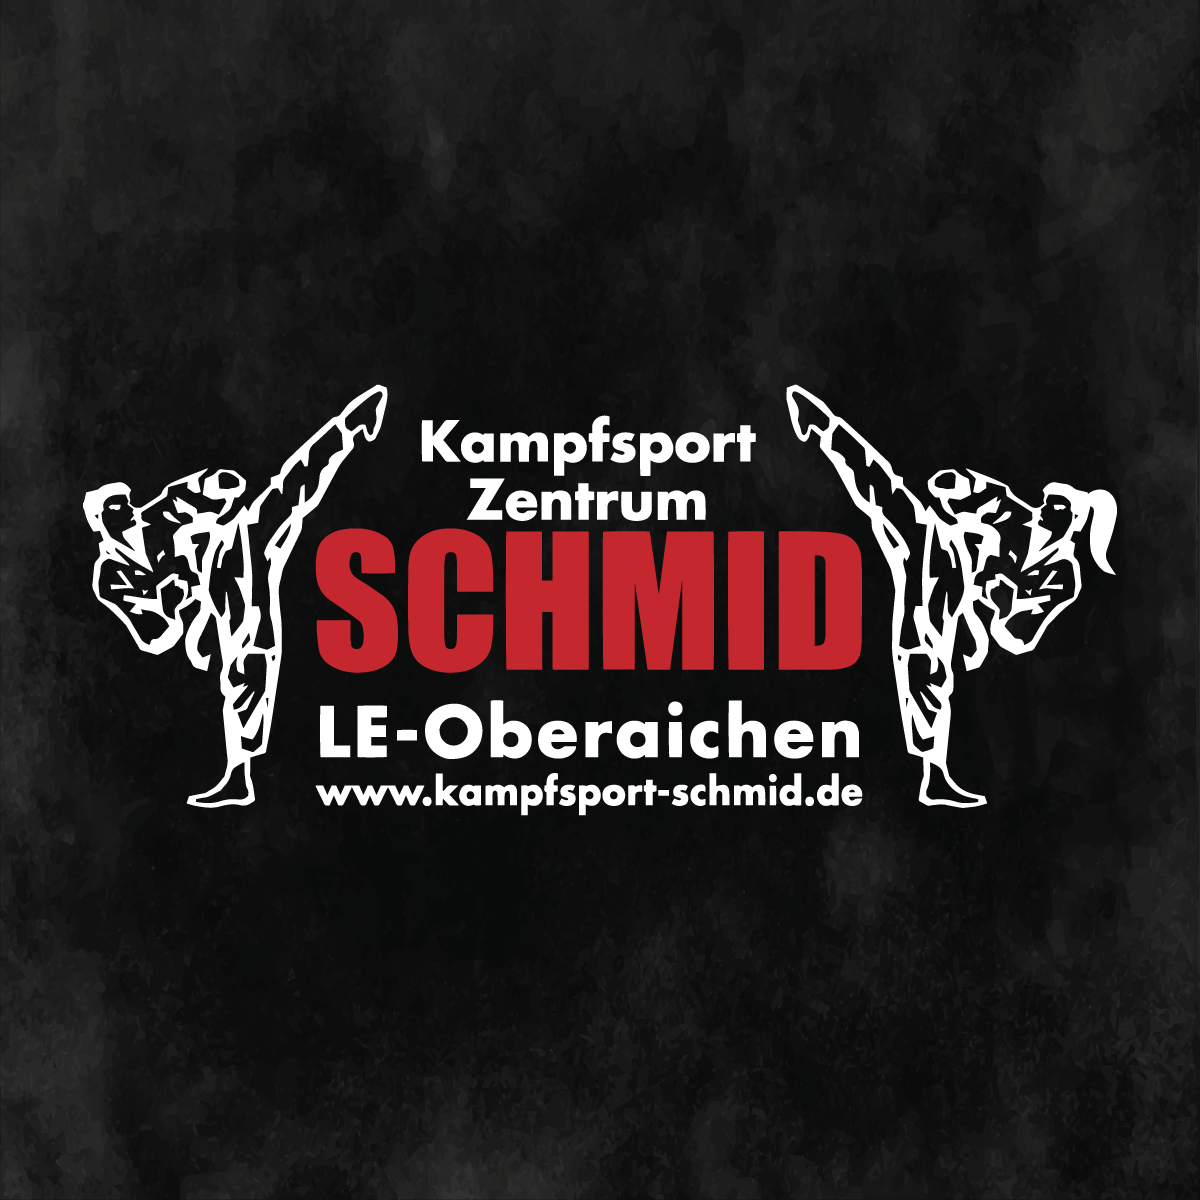 Kampfsport Zentrum Schmid Logo